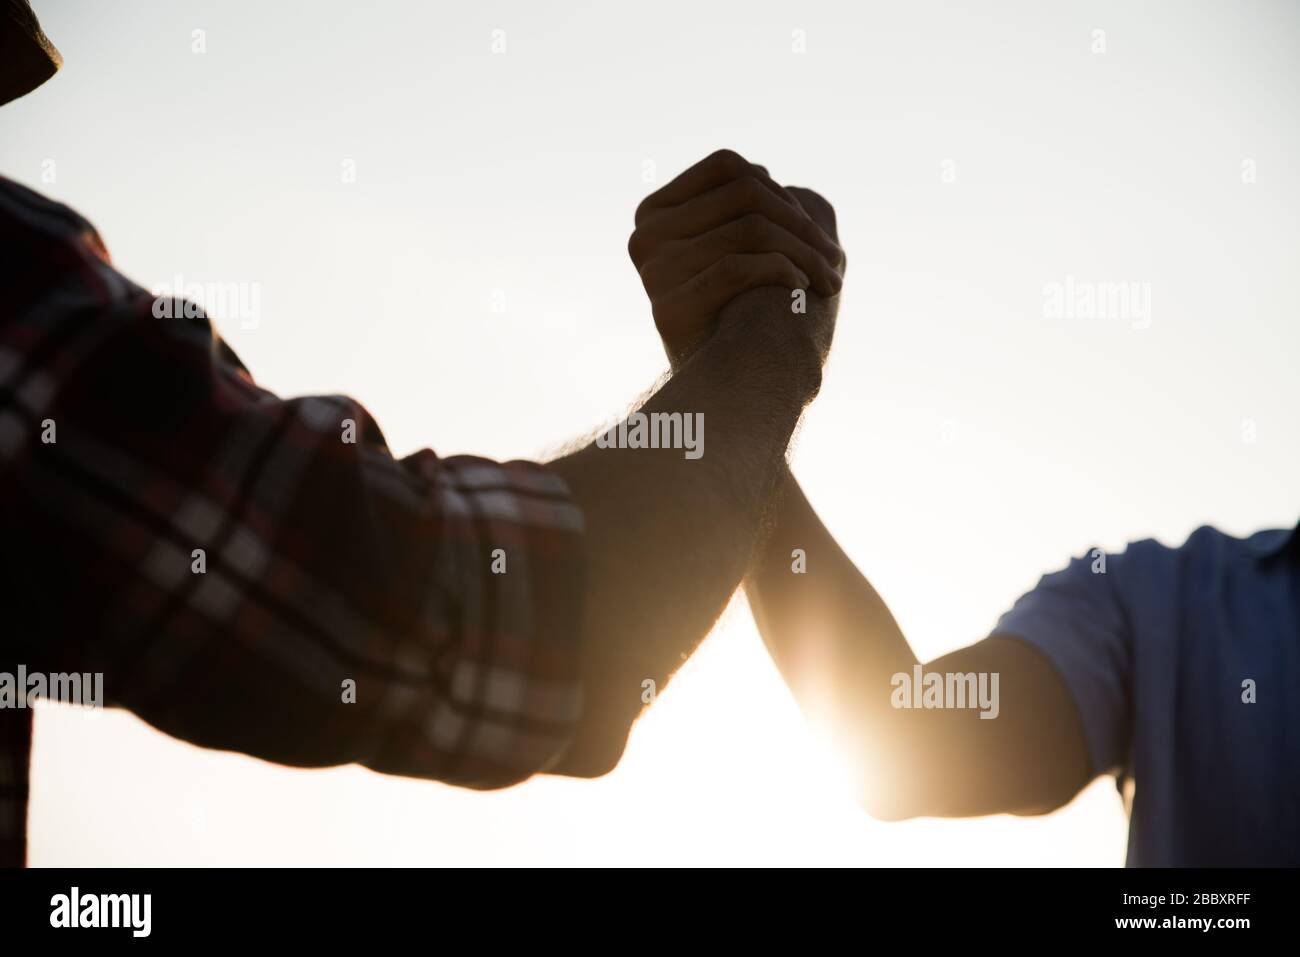 Closep up amichevole handshake, due uomini braccio wrestling mostrando unità e lavoro di squadra. Amicizia felicità tempo libero partenariato concetto di squadra. Foto Stock